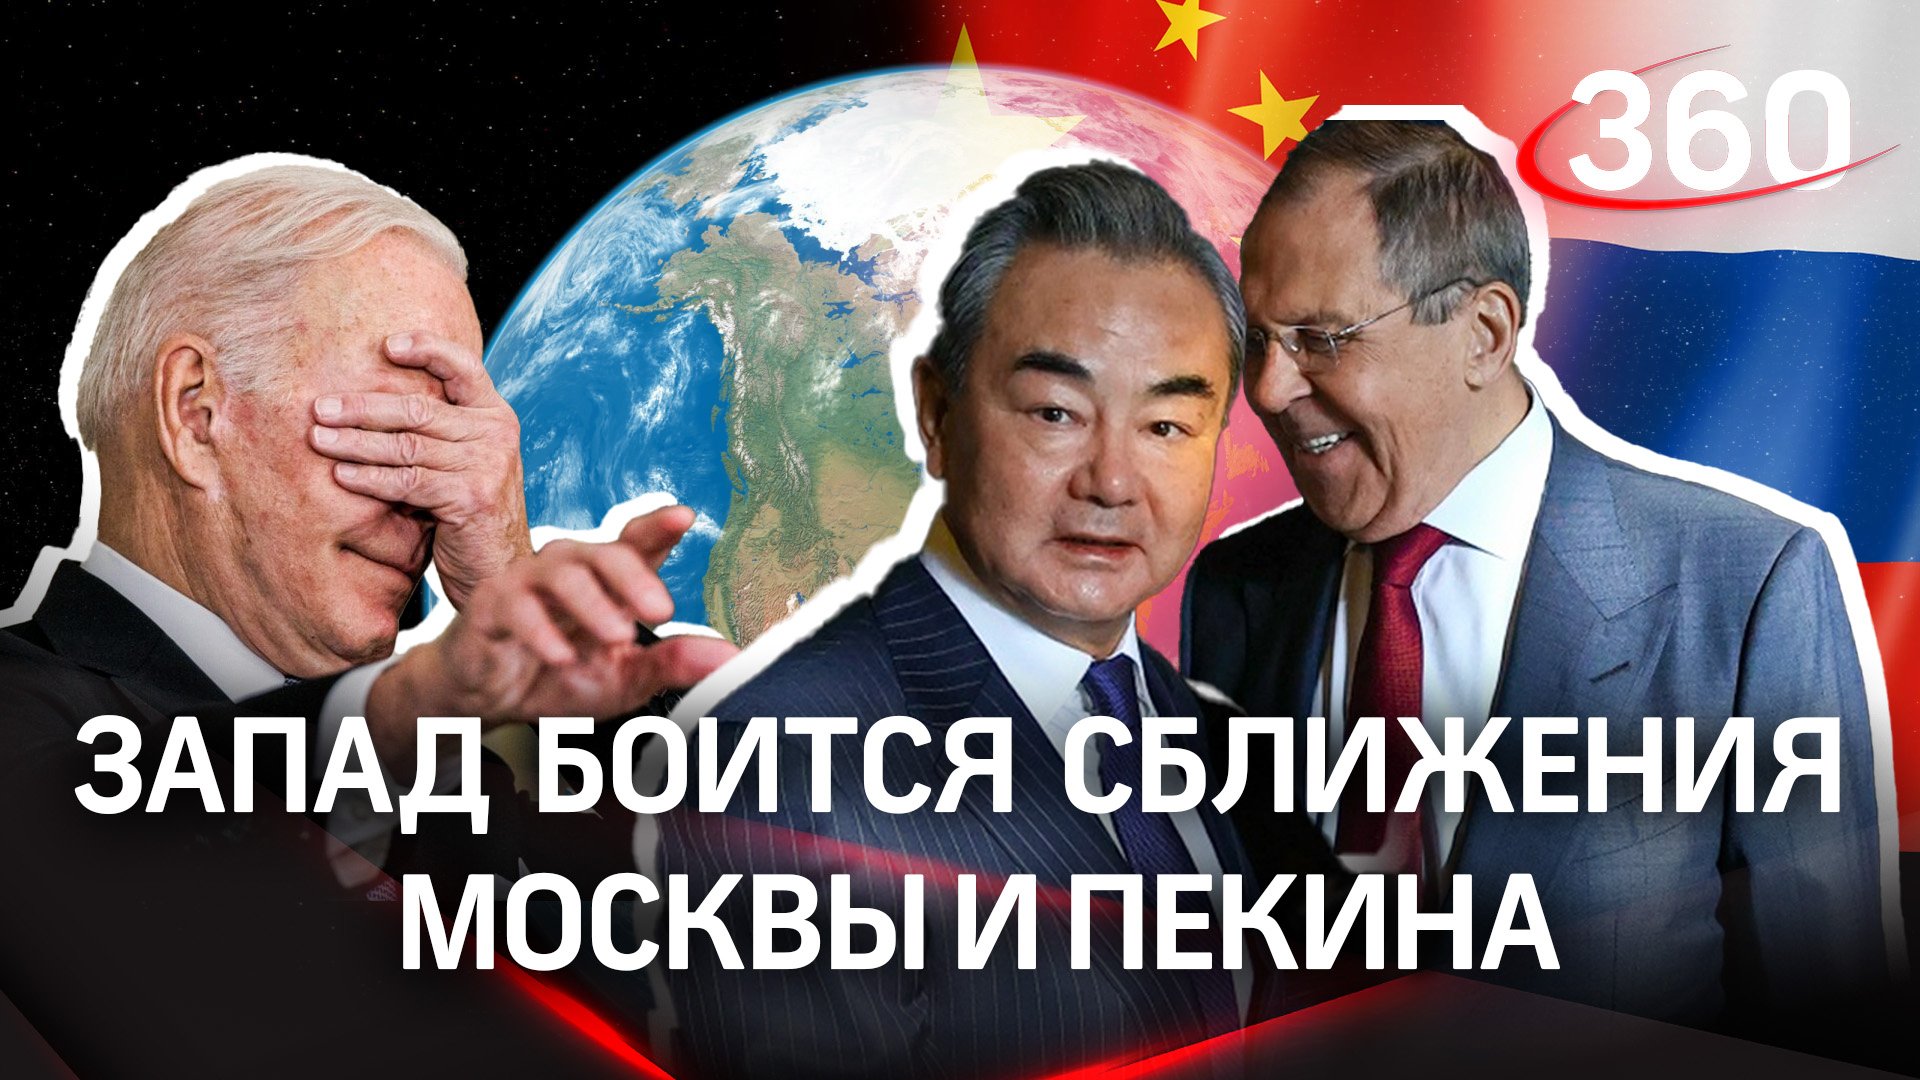 План урегулирования конфликта от КНР. Запад опасается сближения Москвы и Пекина